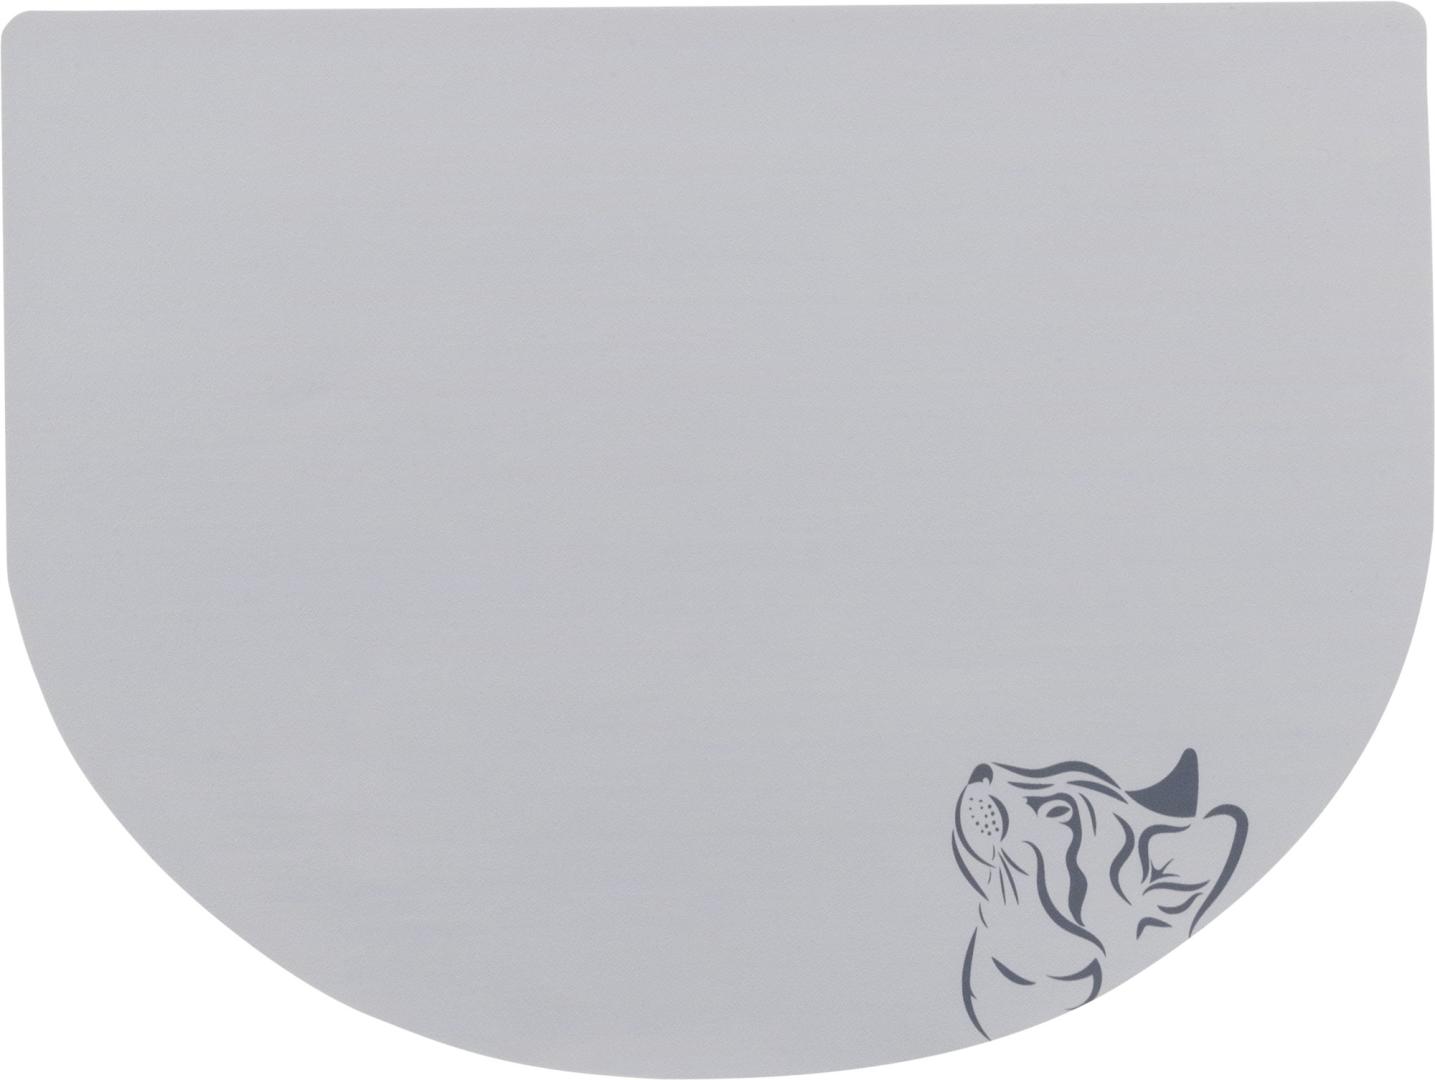 TRIXIE Napfunterlage Katzenkopf, 40 x 30 cm